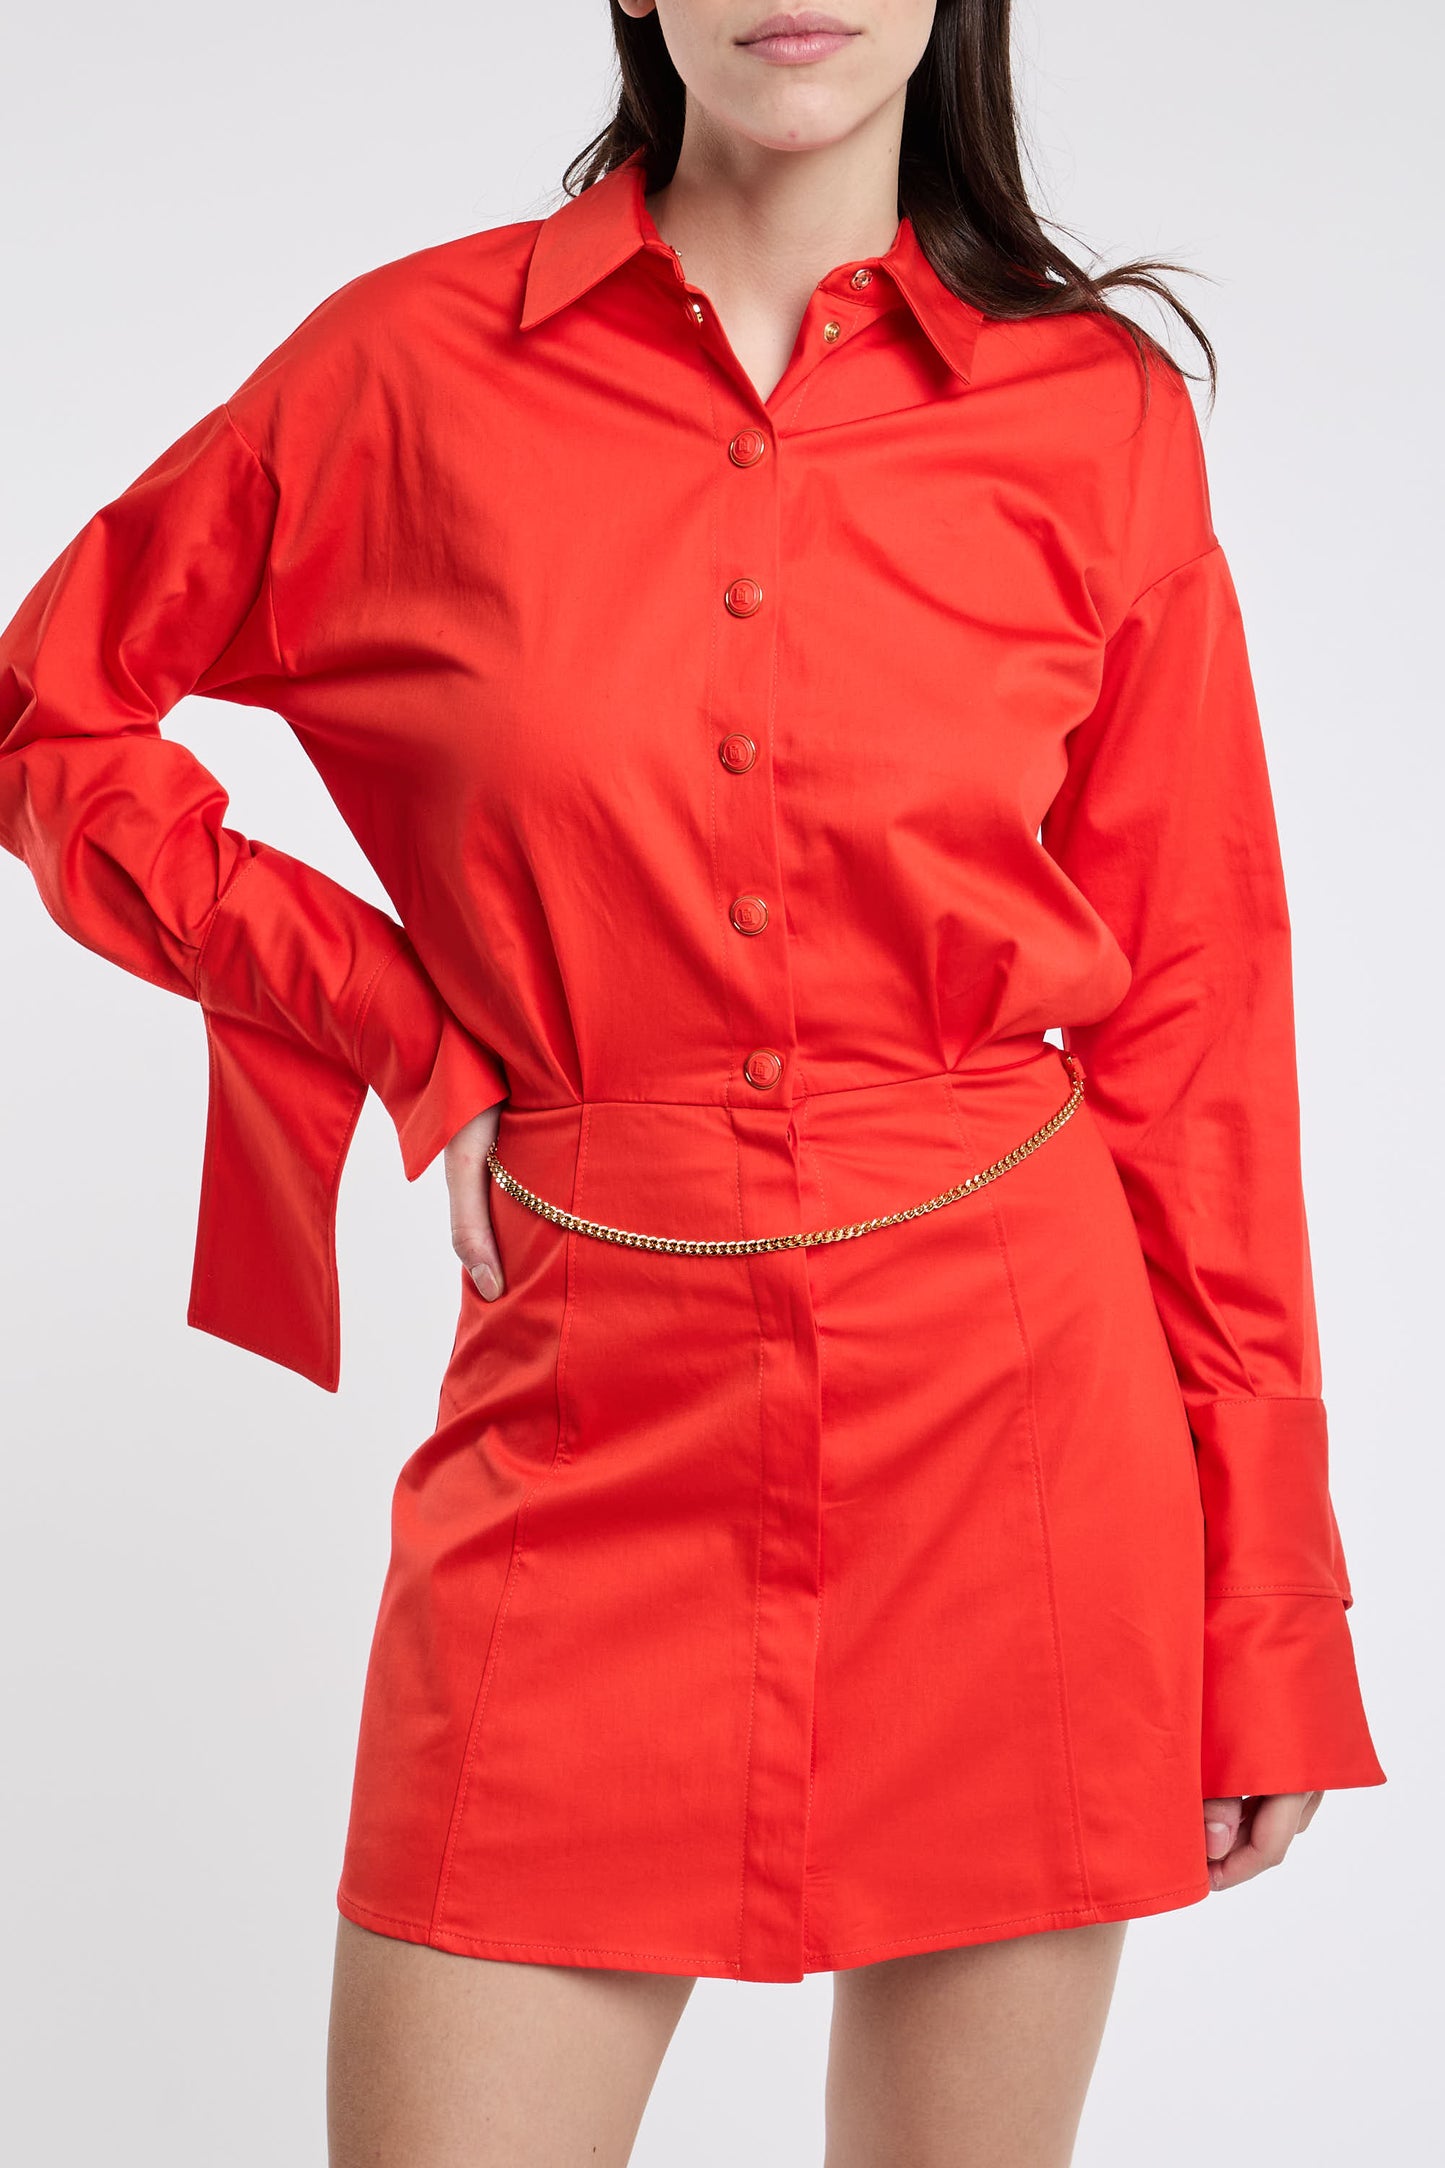  Elisabetta Franchi Red Dress In Cotton/elastane Rosso Donna - 5